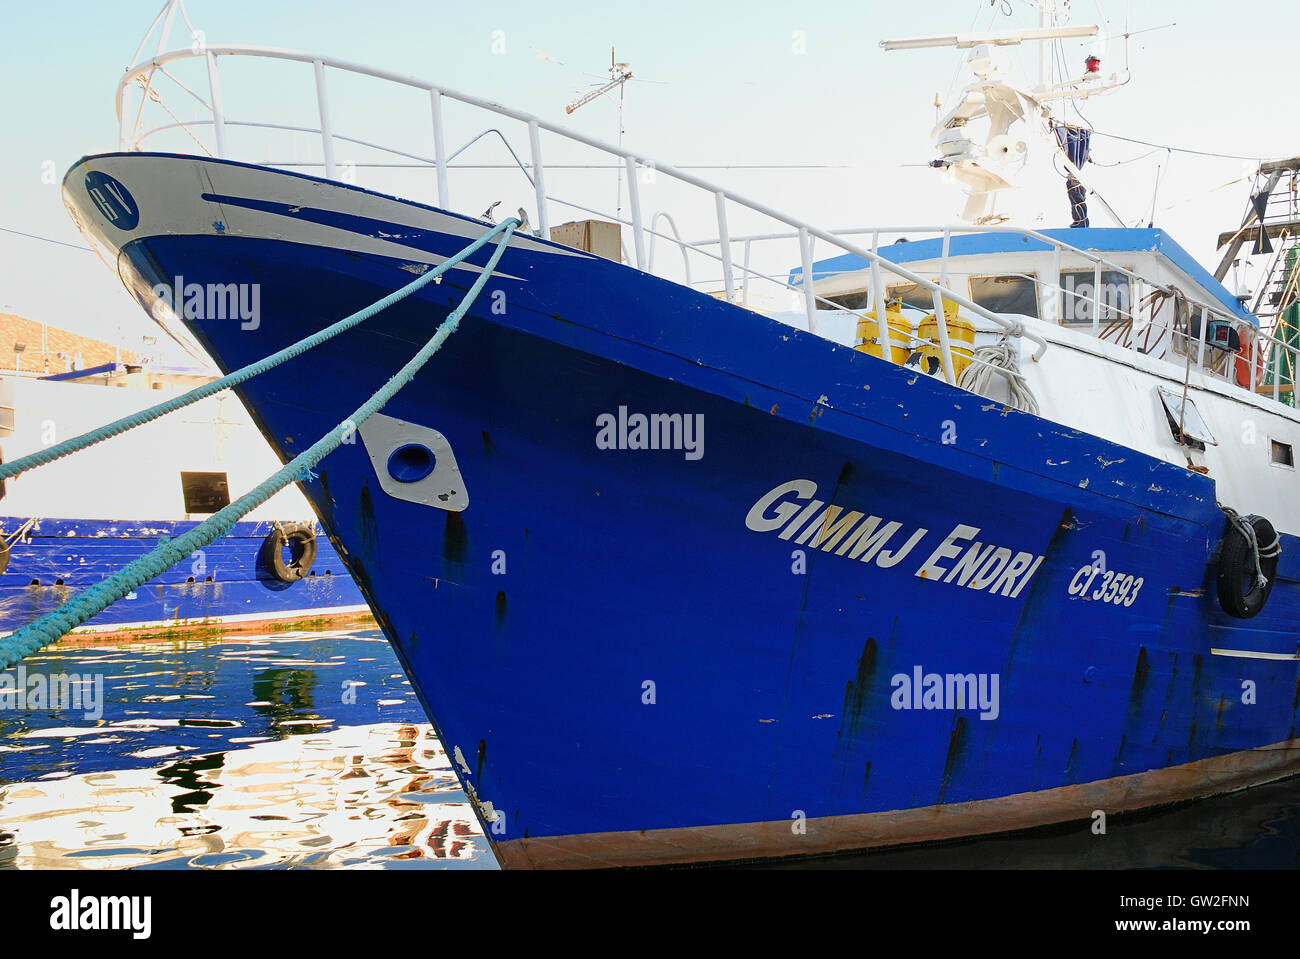 Chioggia, Veneto, Italia. Barcos de pesca en el puerto. Chioggia es el  puerto pesquero más importante en el norte de Italia. El nombre del barco  de pesca en la foto es Gimmj